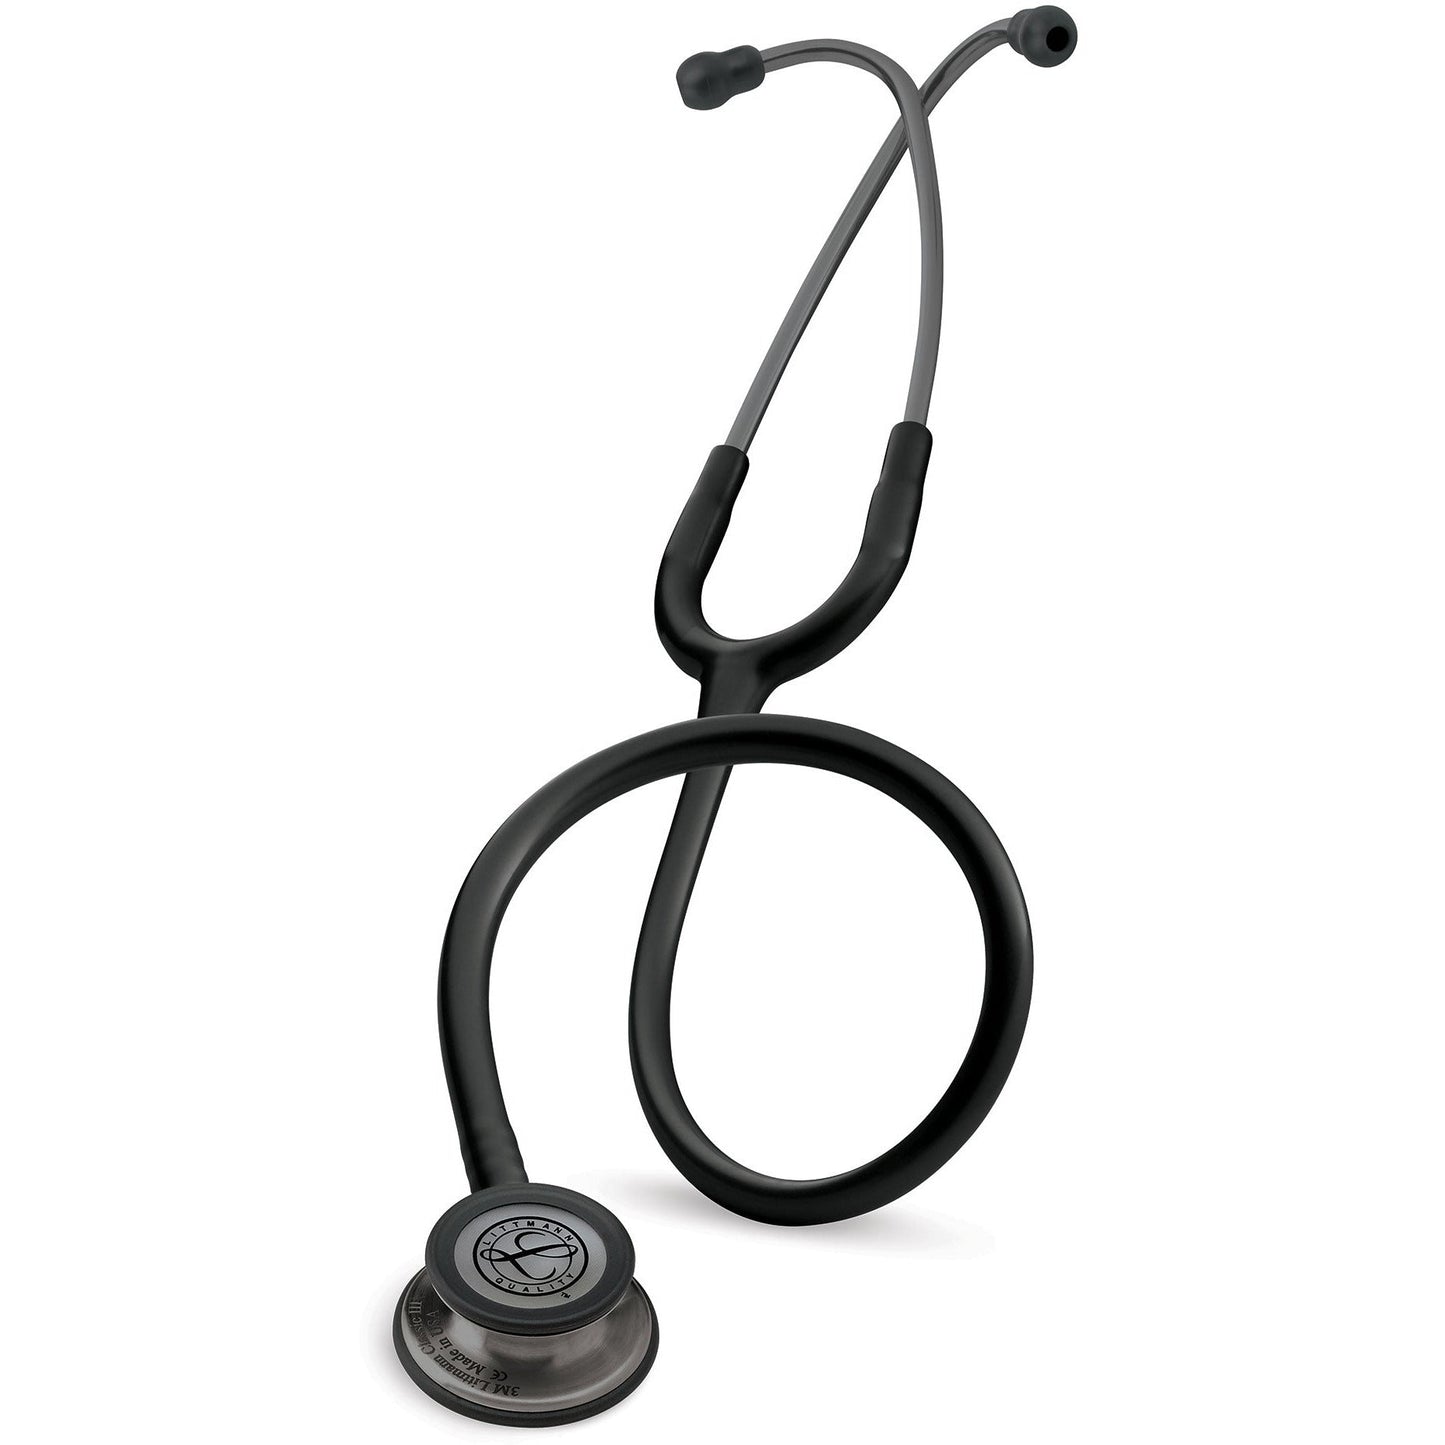 3M™ Littmann® Classic III™ -stetoskooppi, tarkkailuun, savunvärinen viimeistely, musta letkusto, 27 tuumaa, 5811